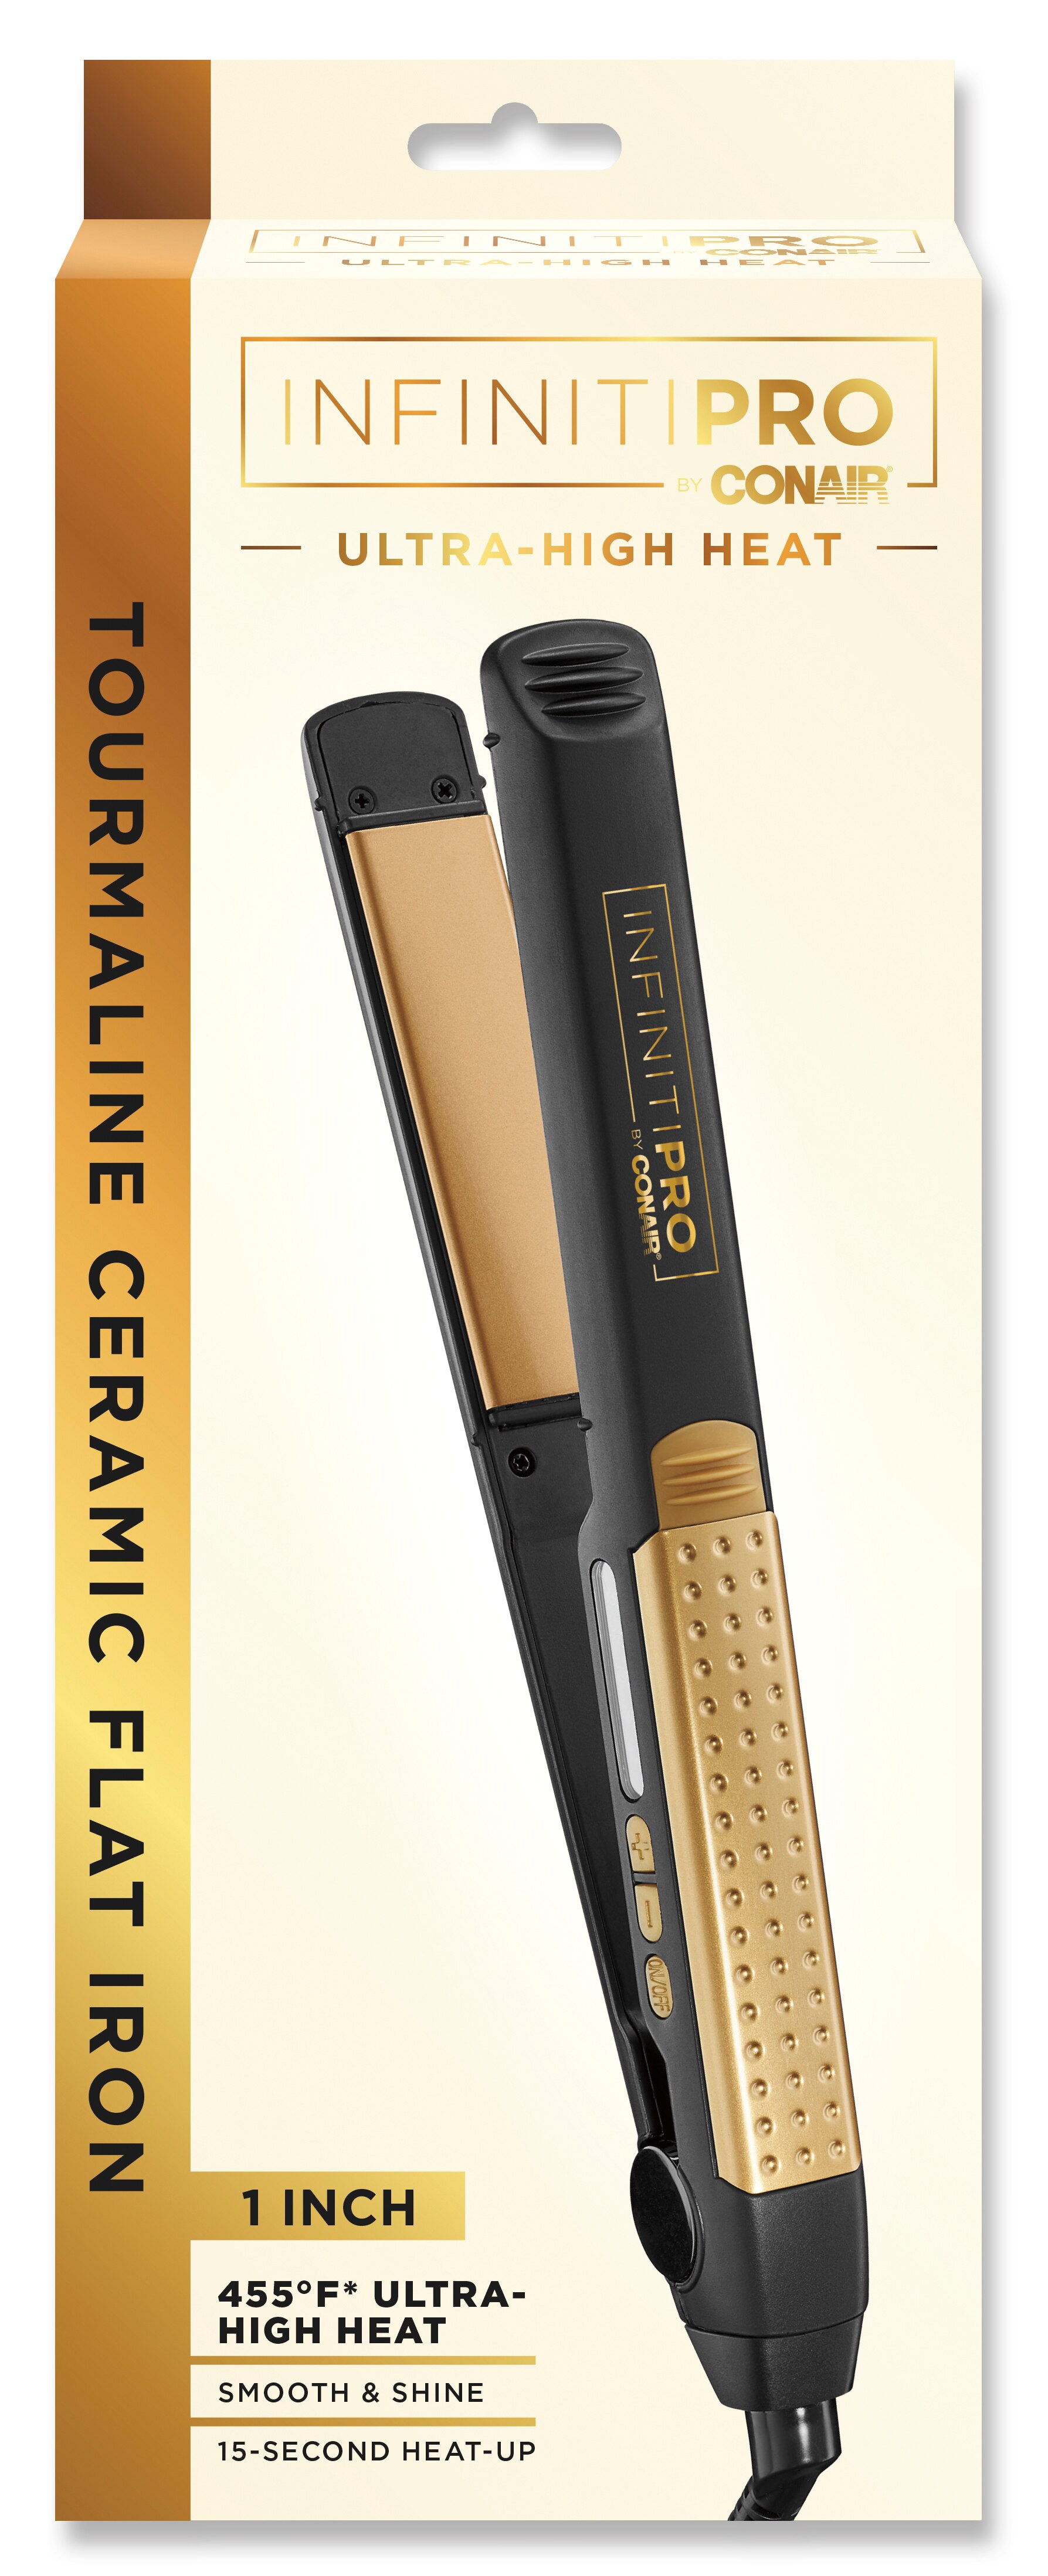 Conair InfinitiPro - Plancha para el cabello con tecnología Tourmaline Ceramic